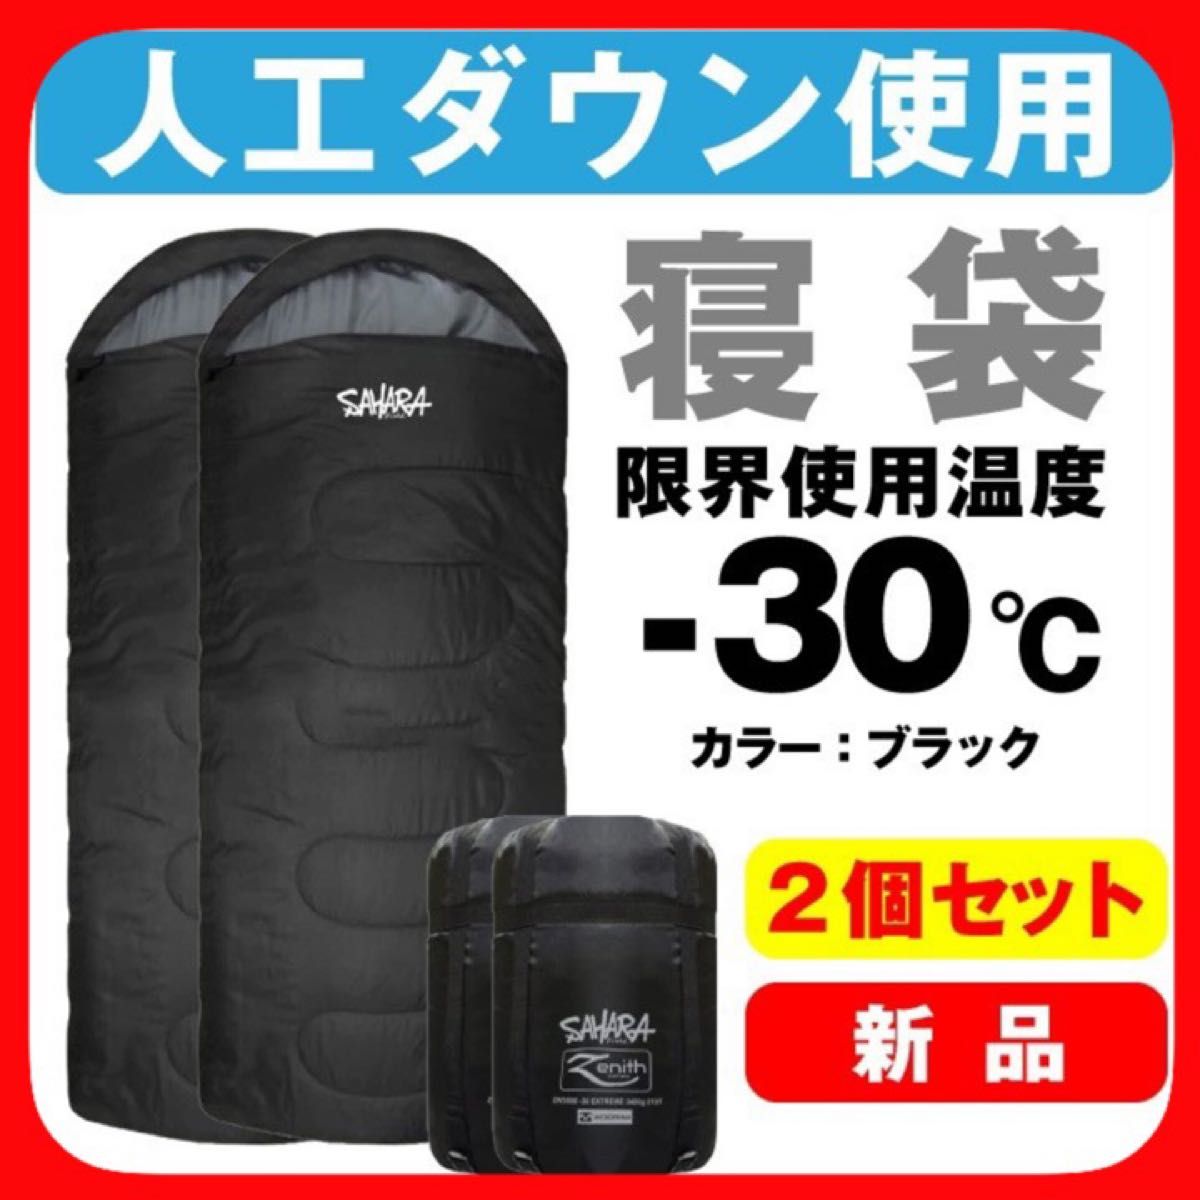 新品  寝袋 -30℃ キャンプ 登山 アウトドア用品 寝具 旅行用品 2個セット ブラック